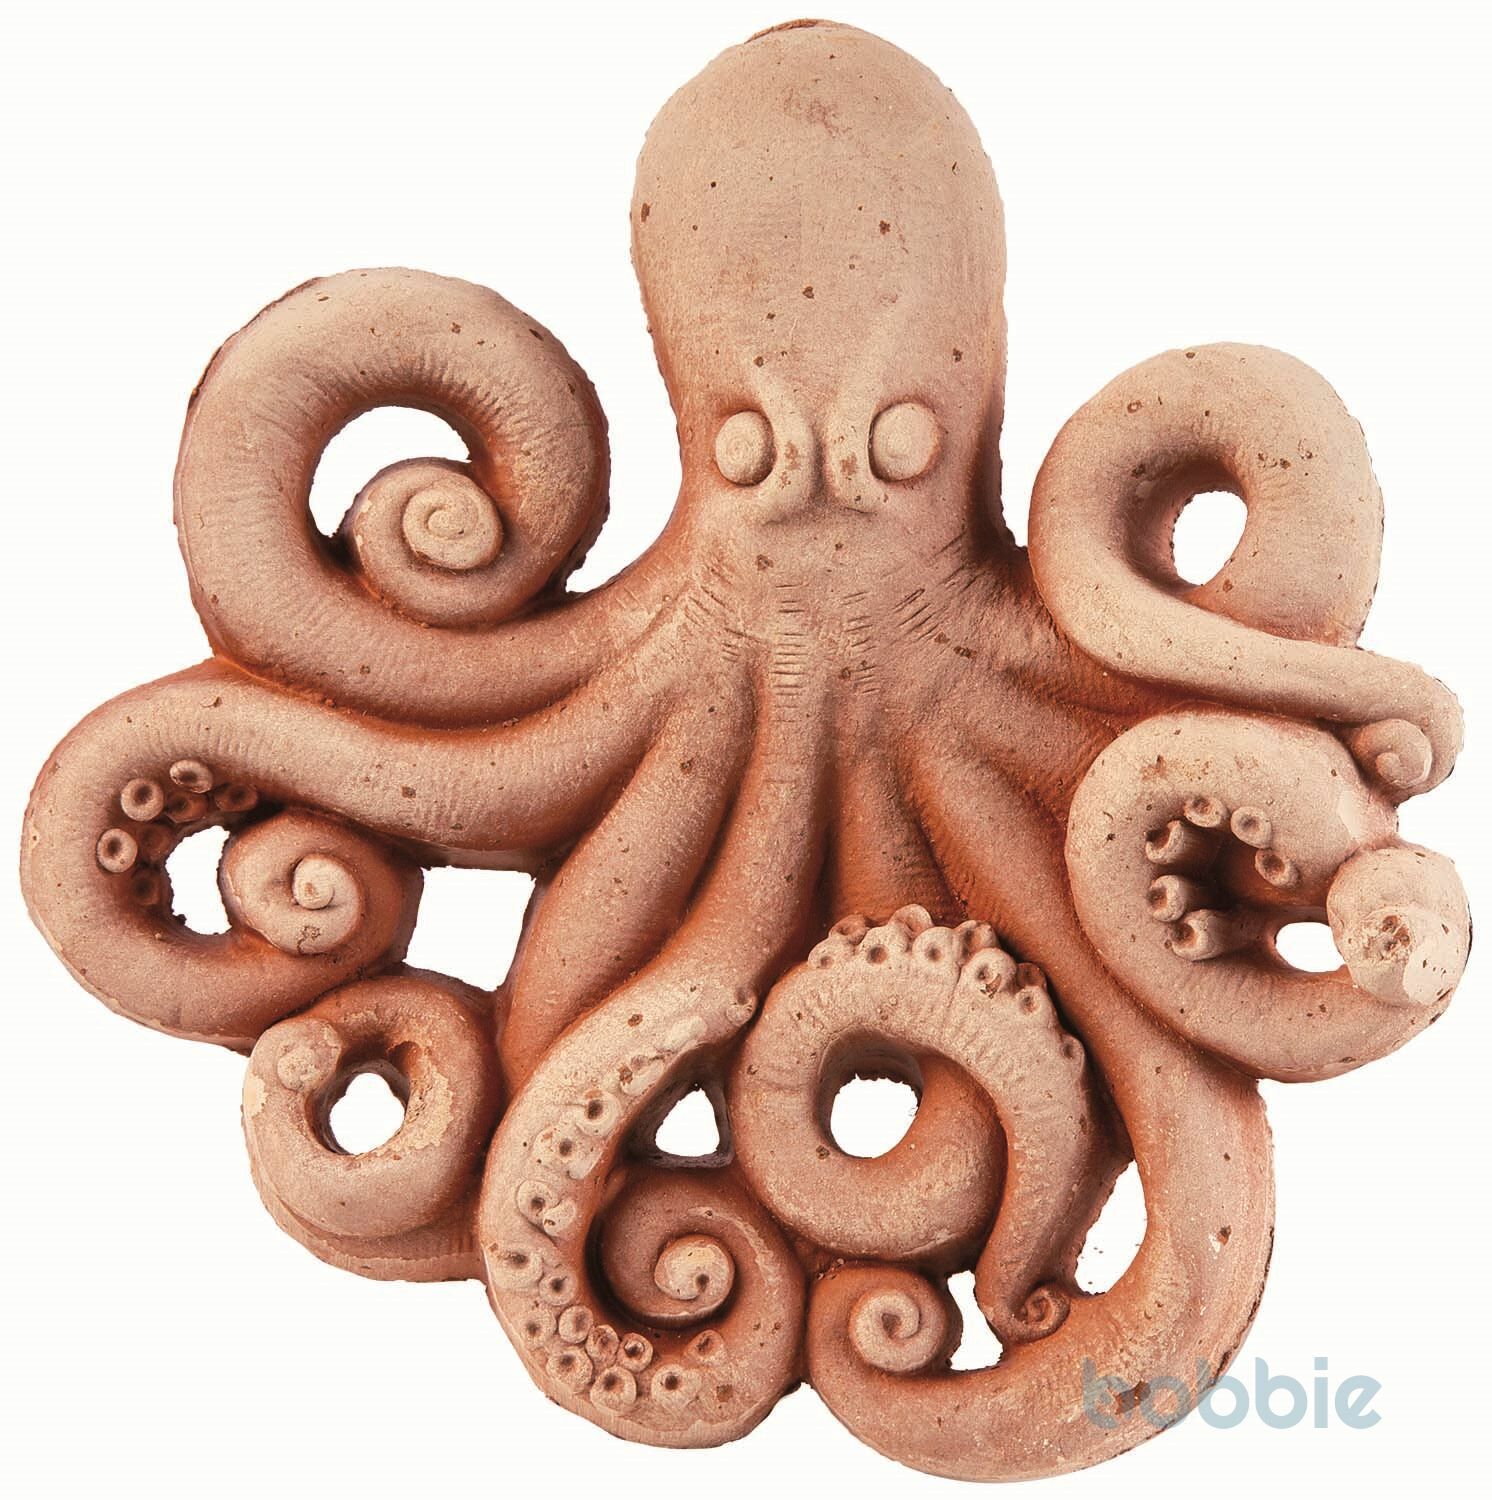 Octopus - POLPO